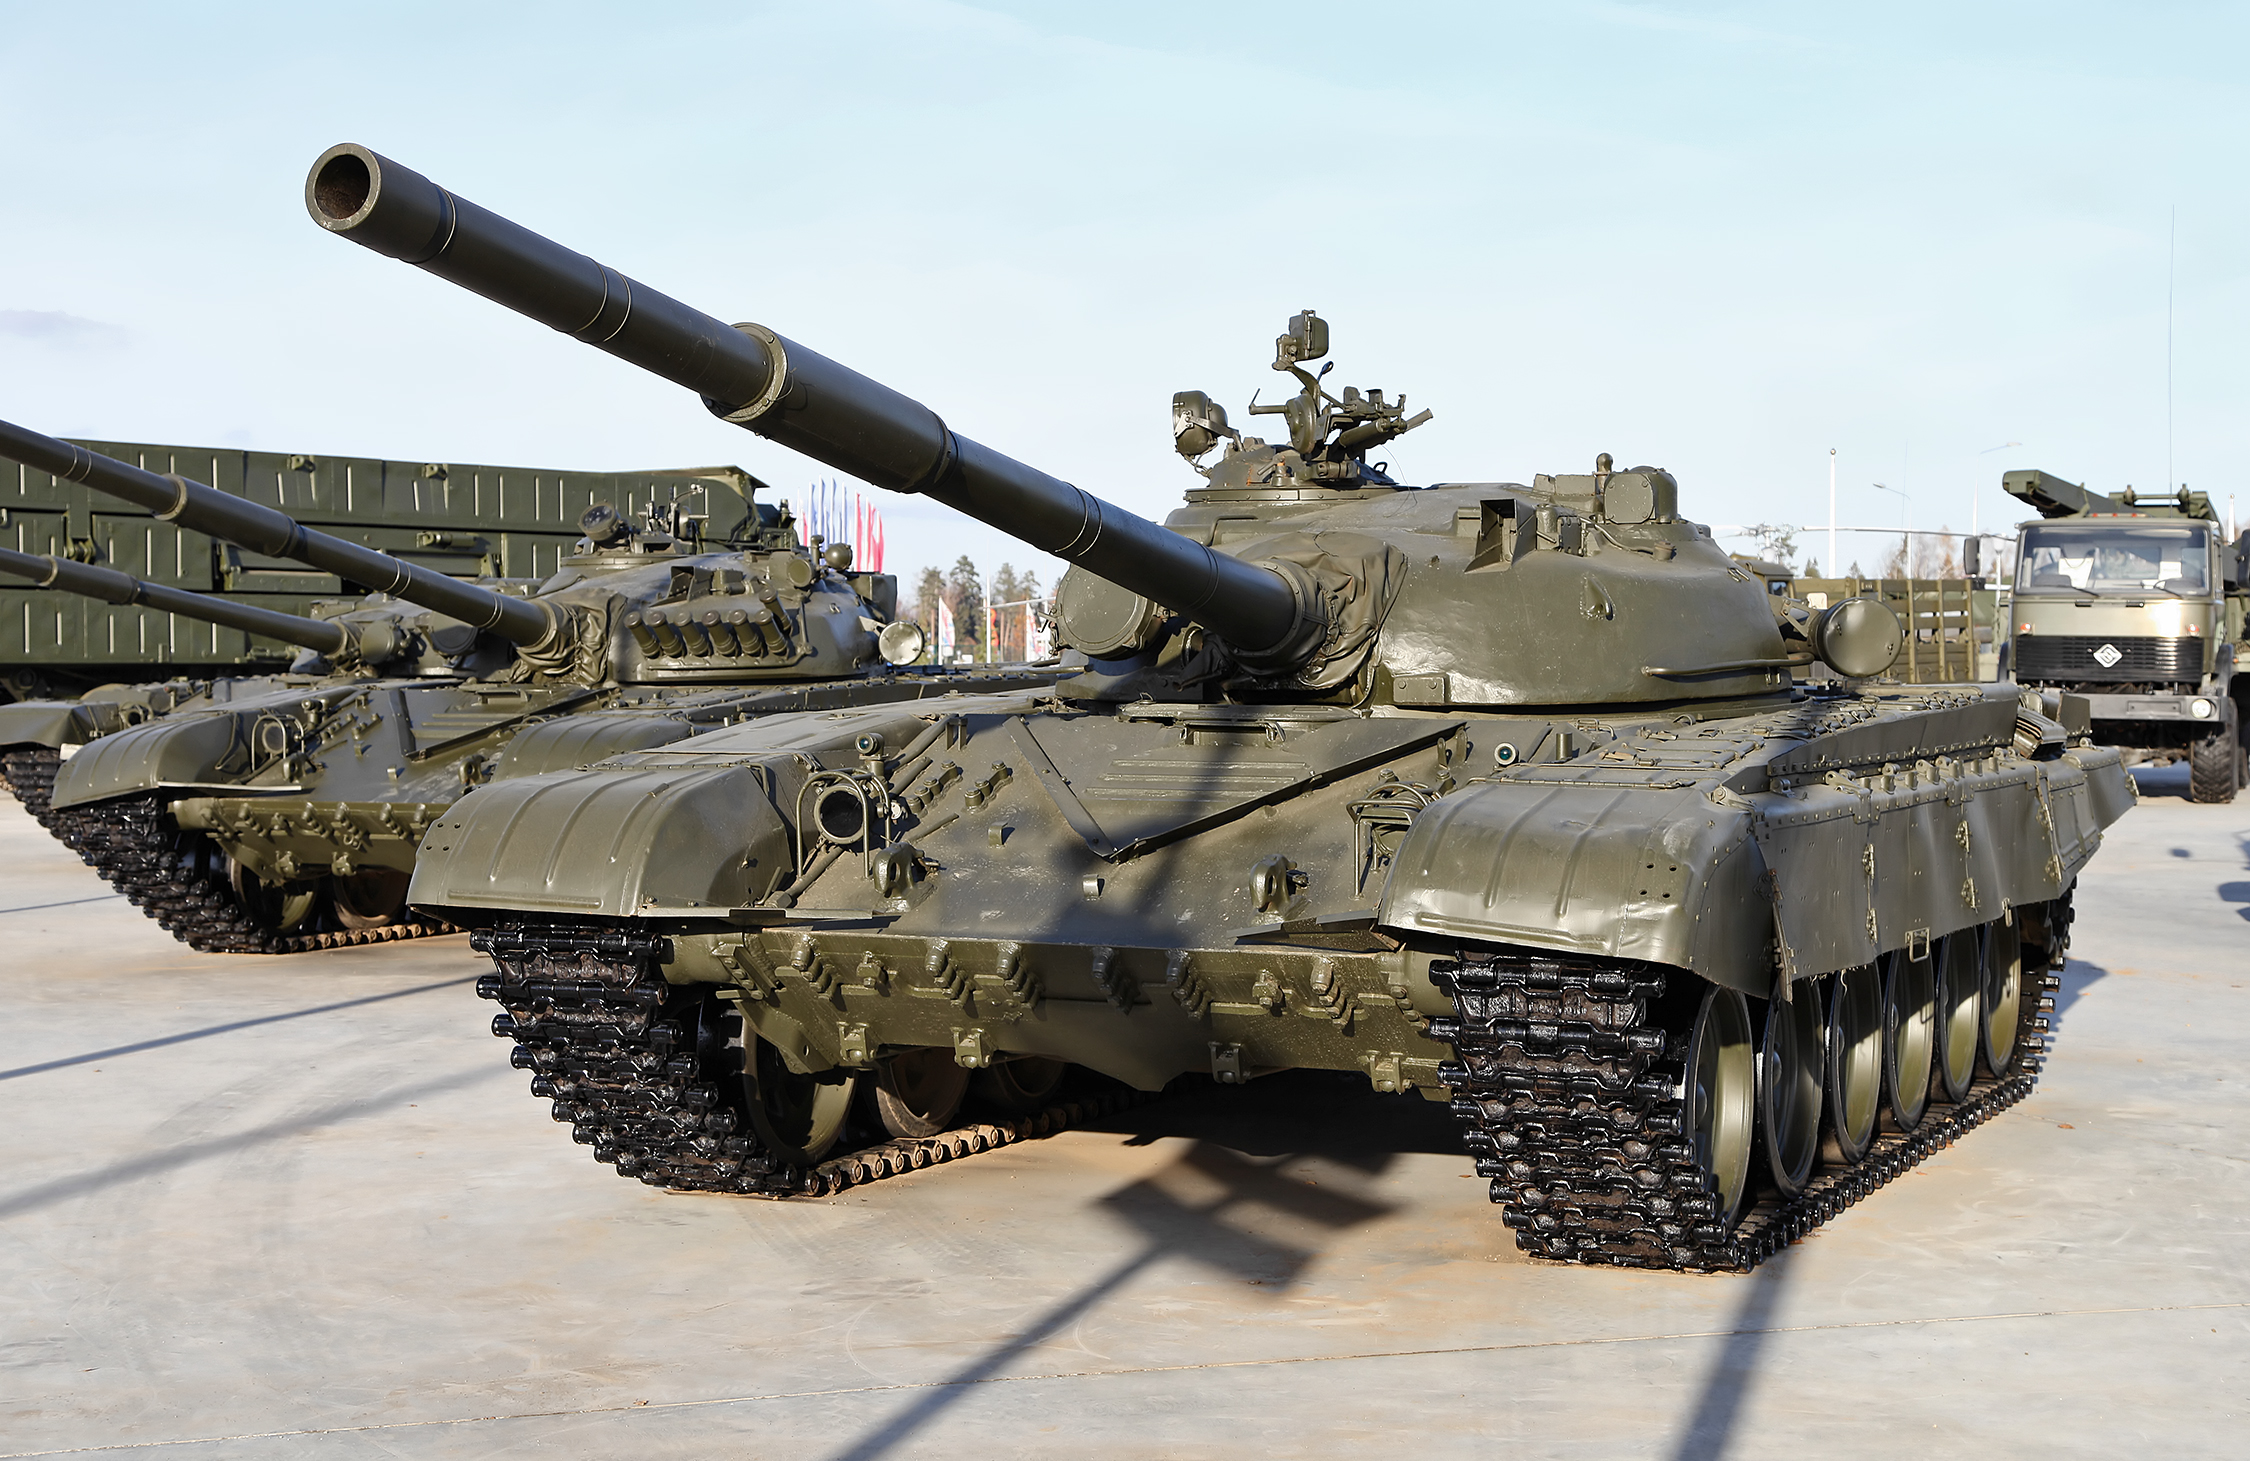 Военный эксперт Баранец рассказал, почему США поставляют Киеву именно советские танки